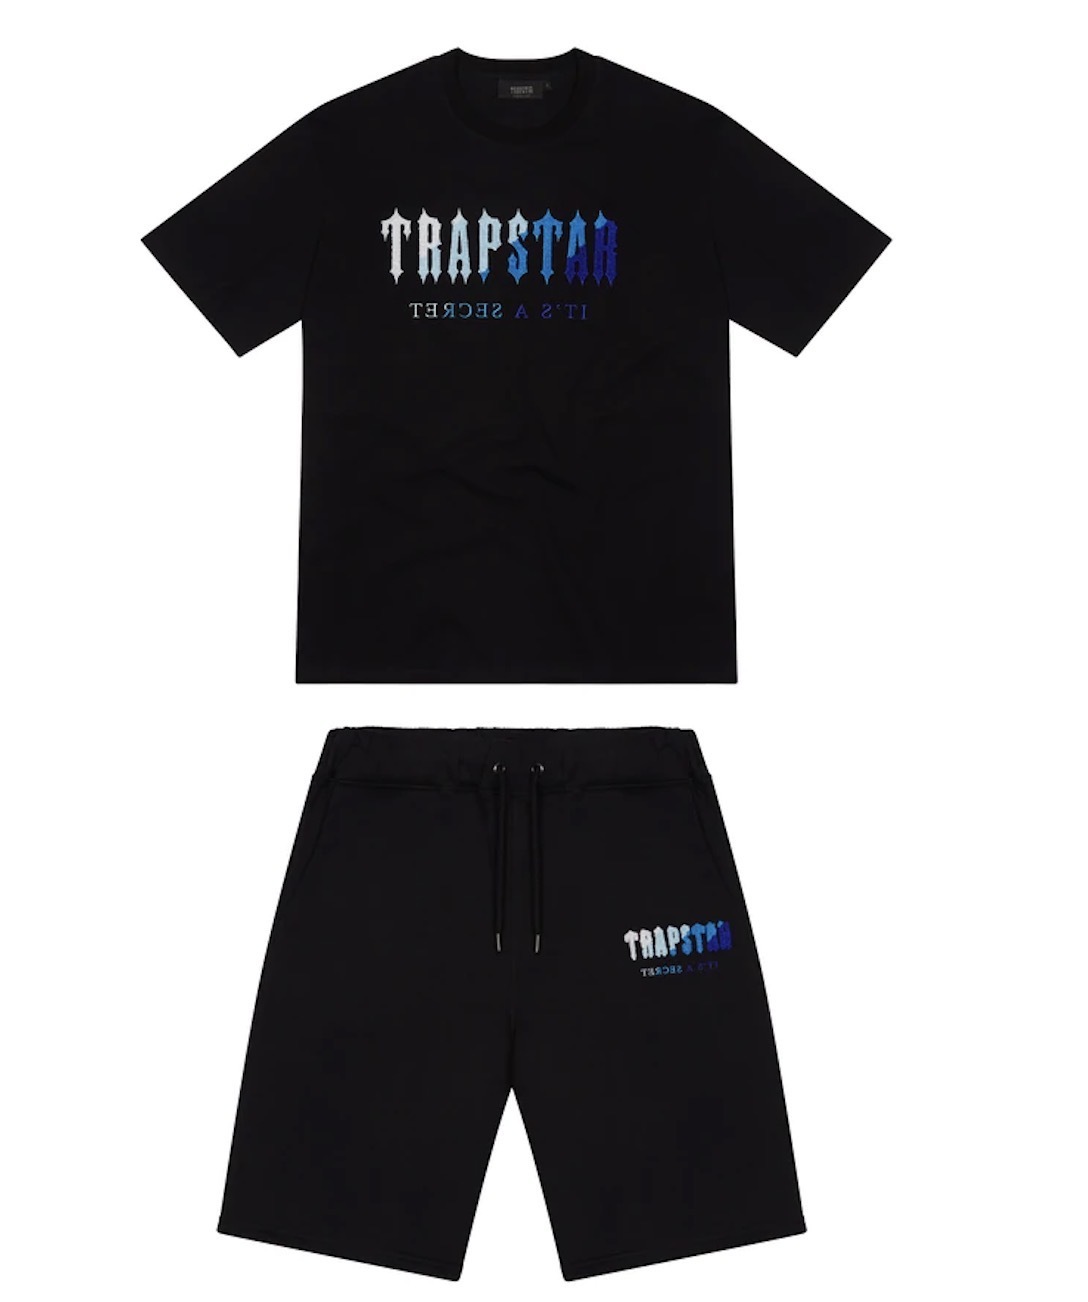 Mens Trapstar t 셔츠 반팔 프린트 복장 셔닐 트랙 수트 블랙 코튼 런던 Streetwear S-2XL